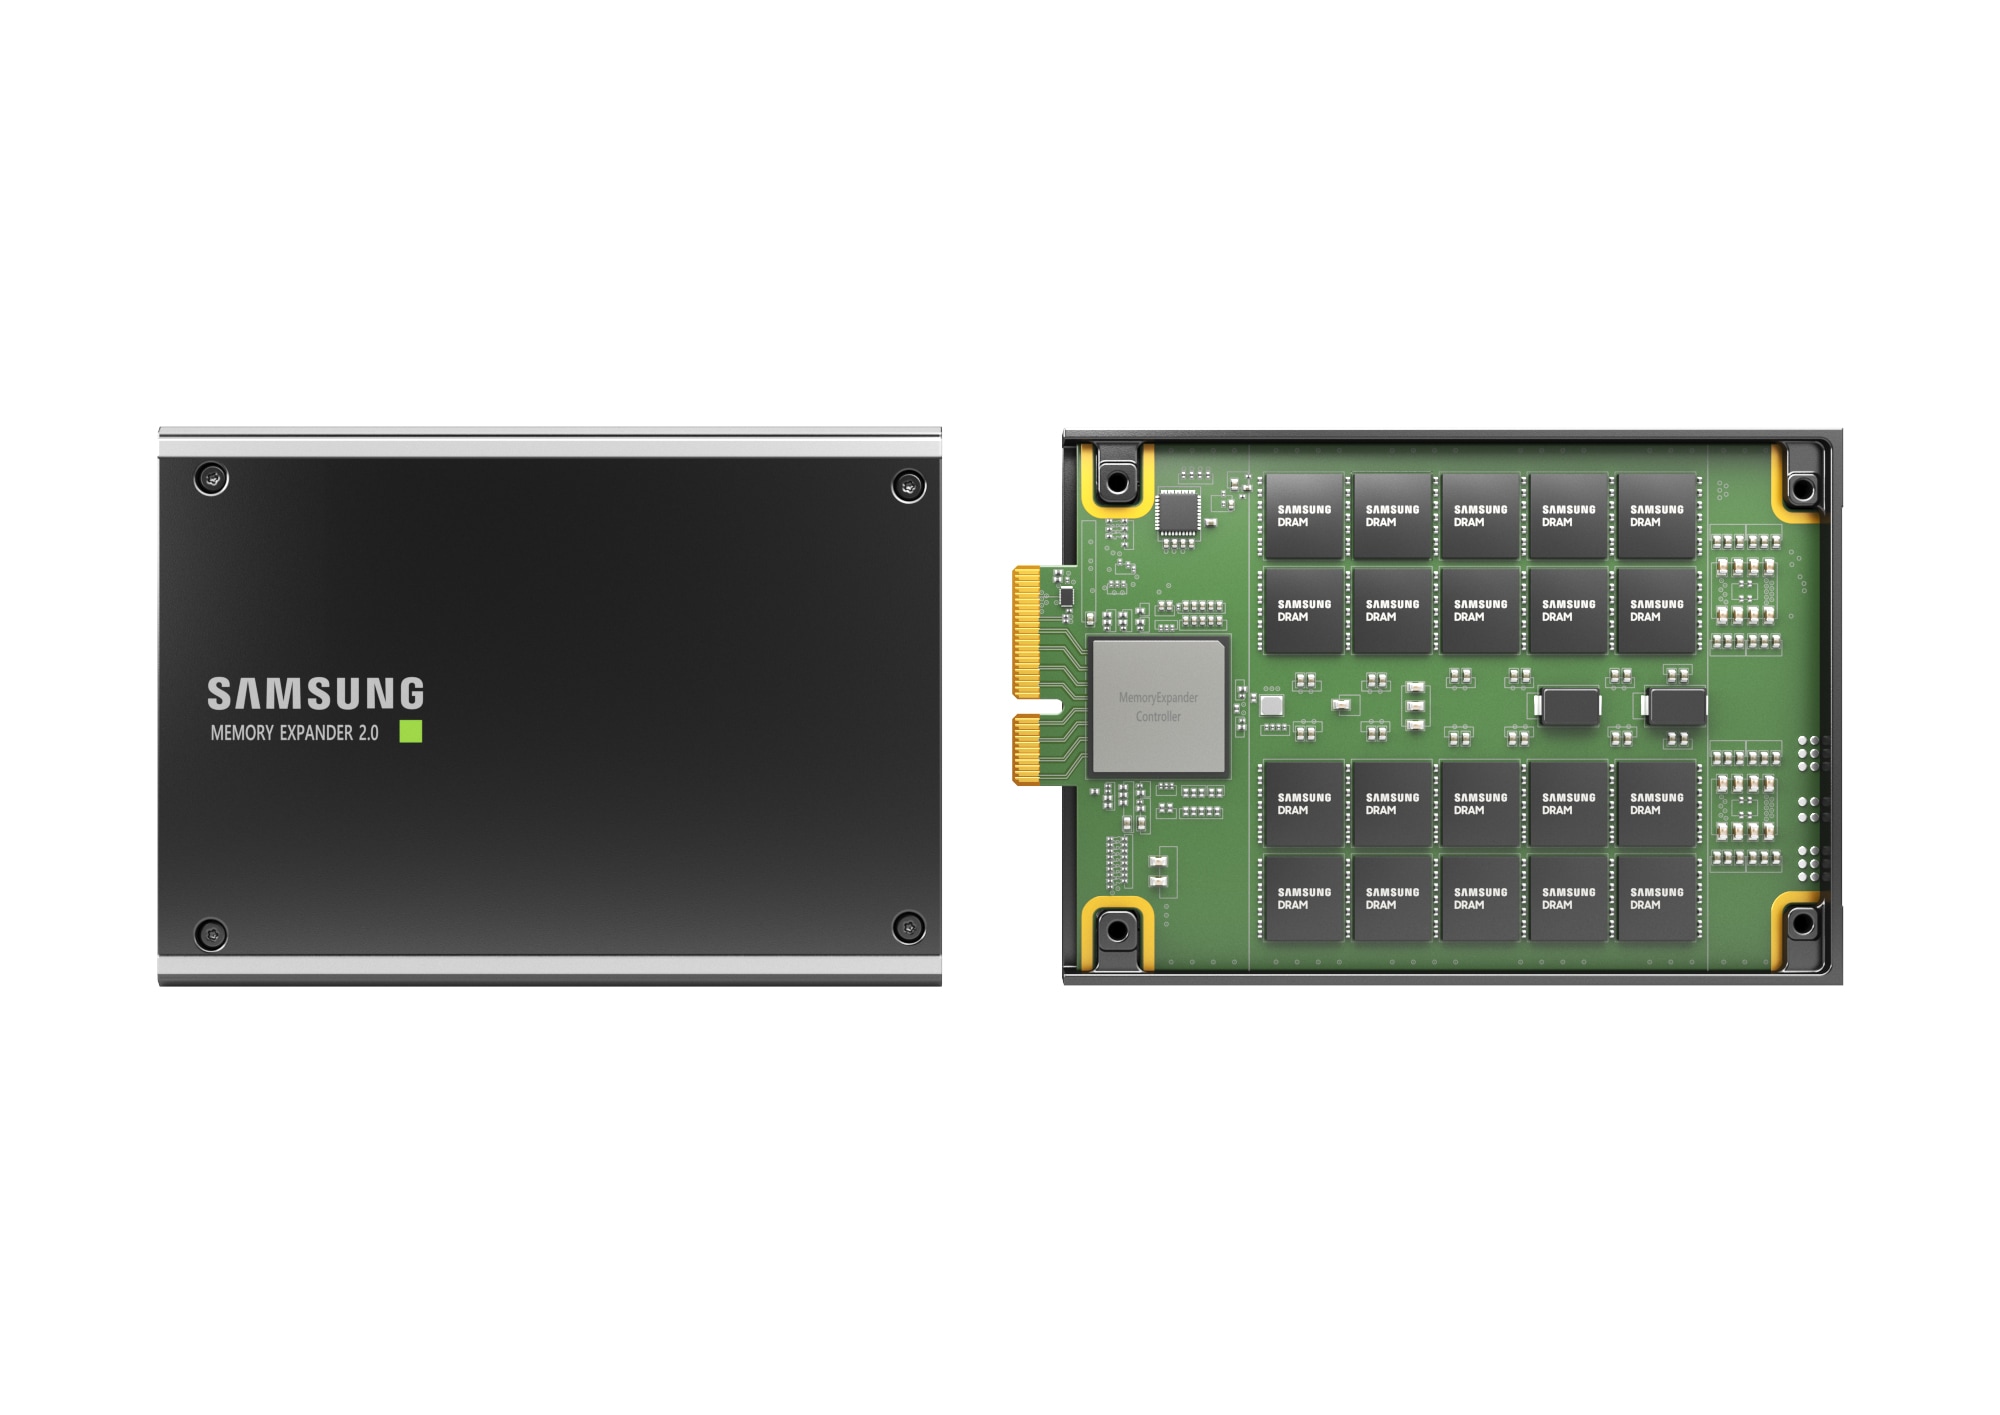 Samsung memory expander 2.0